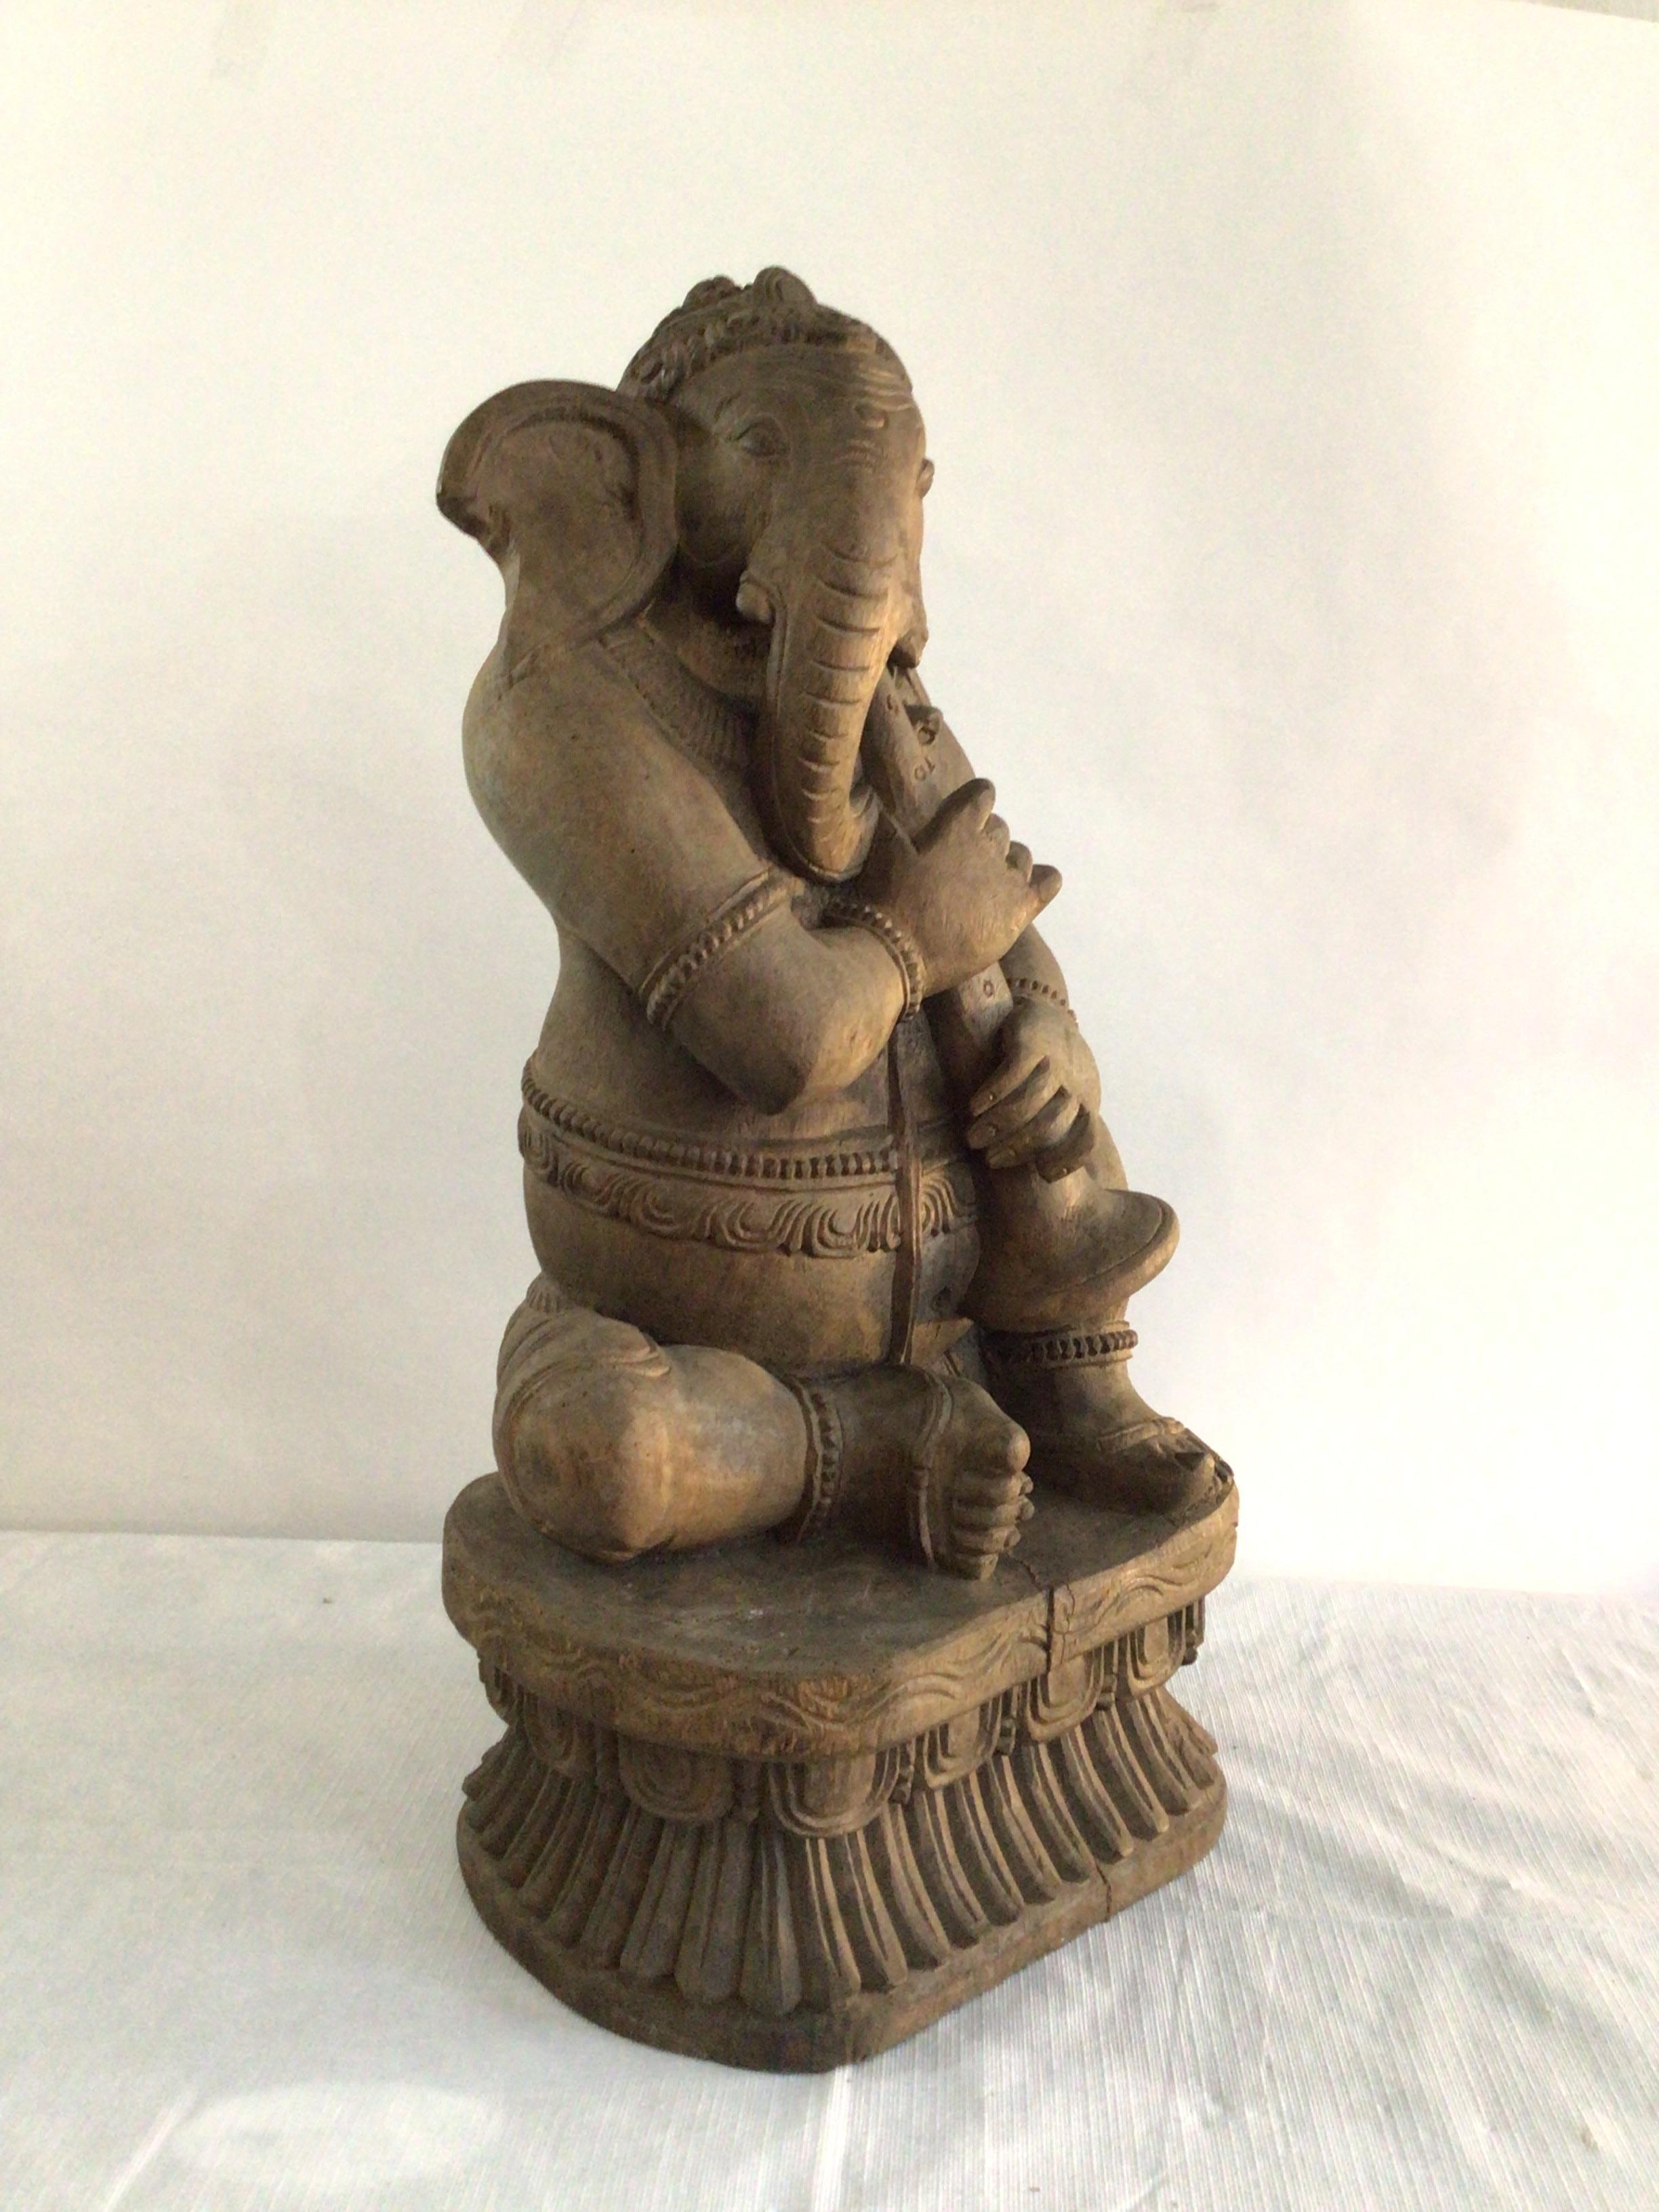 1960er Jahre Handgeschnitzter Elefant aus Thailand, der ein Horn spielt 
Alles Holz
Musiker Ganesh / Musiker Ganesha
Thailand Ganesh
Ganesh als Musiker, der wie Shiva dem Universum Rhythmus verleiht